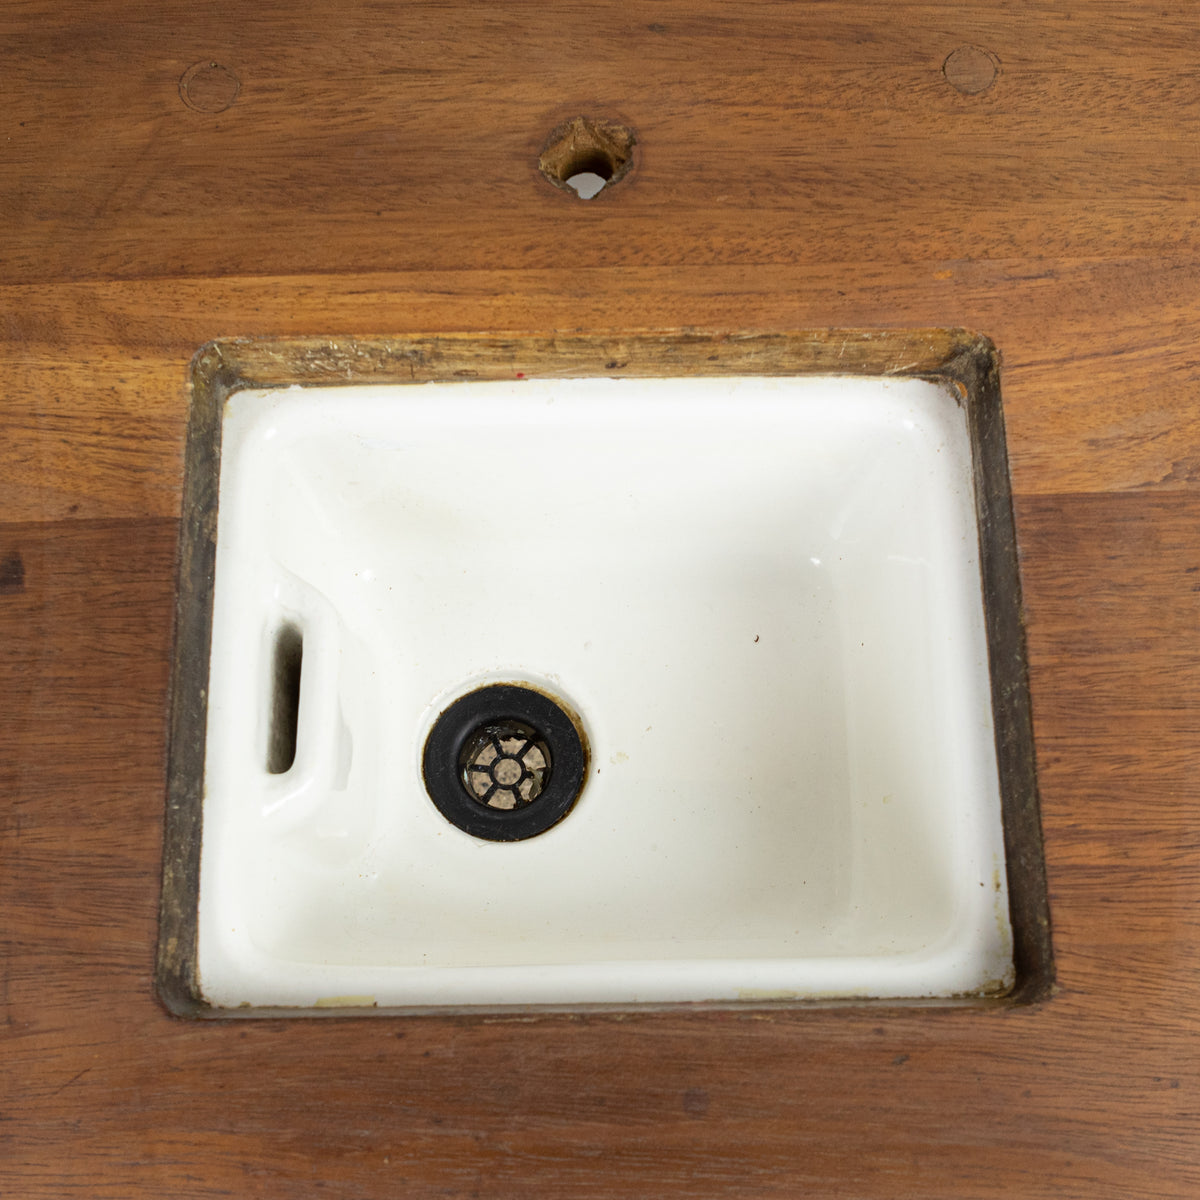 Reclaimed Teak / Iroko Worktop with Butler Sink | The Architectural Forum